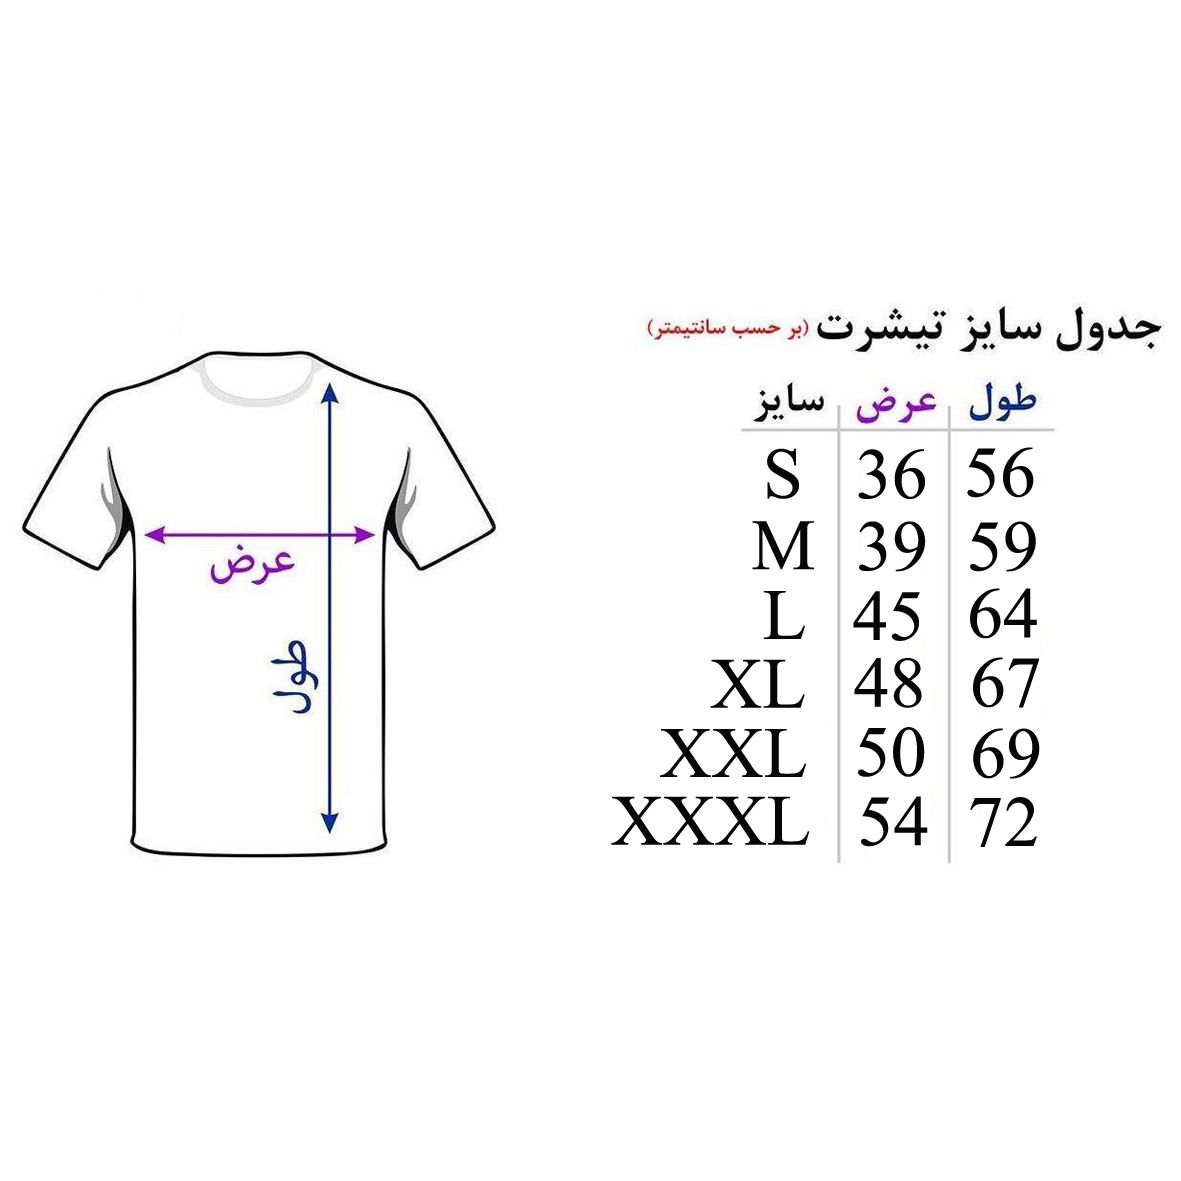 تی شرت آستین کوتاه زنانه اسد طرح پاندا کد 53 -  - 3